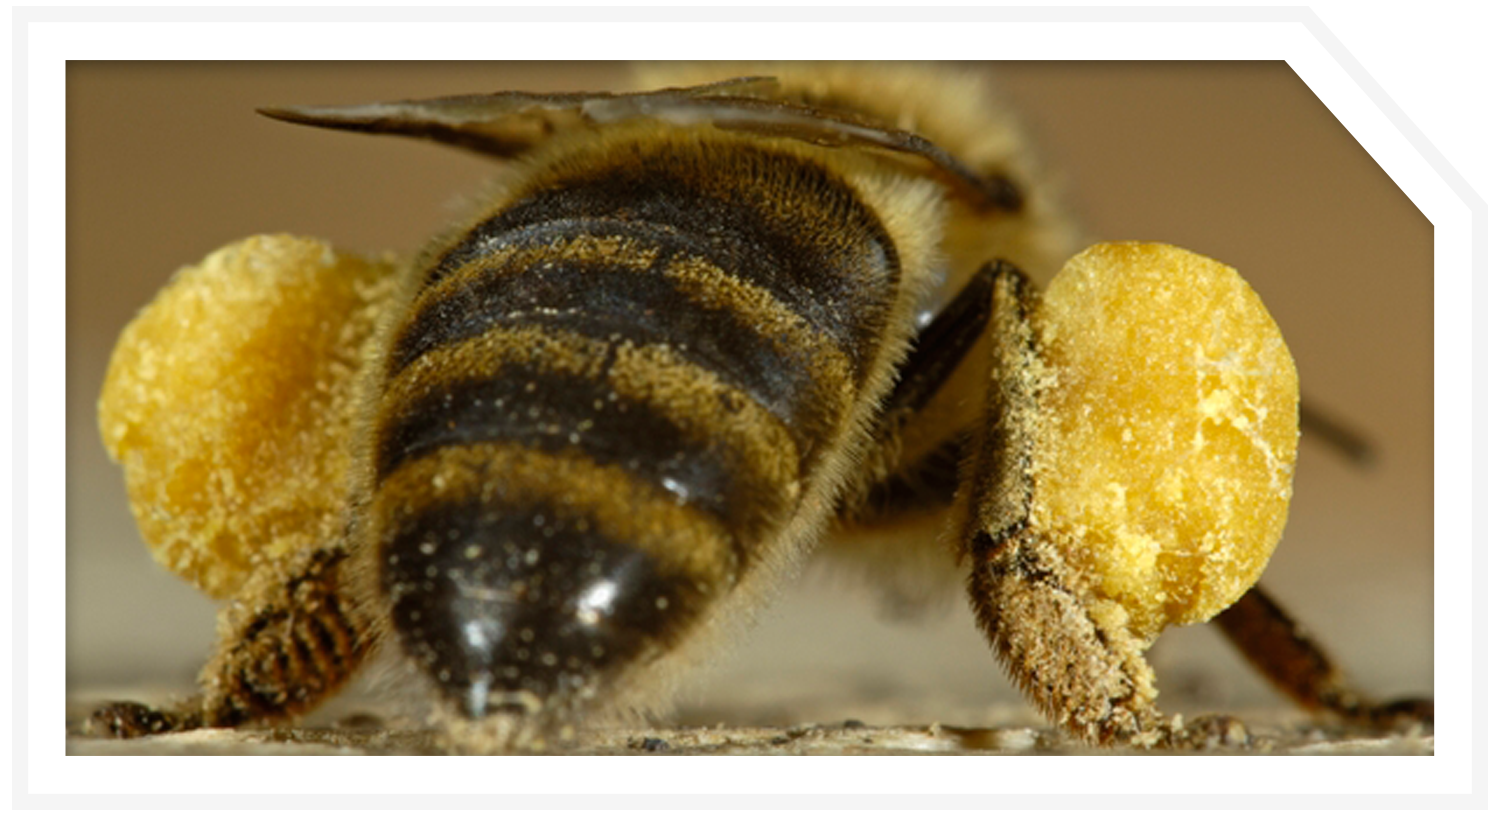 Мешают пчелы соседа: что делать, как можно избавиться или уничтожить по закону
мешают пчелы соседа: что делать, как можно избавиться или уничтожить по закону